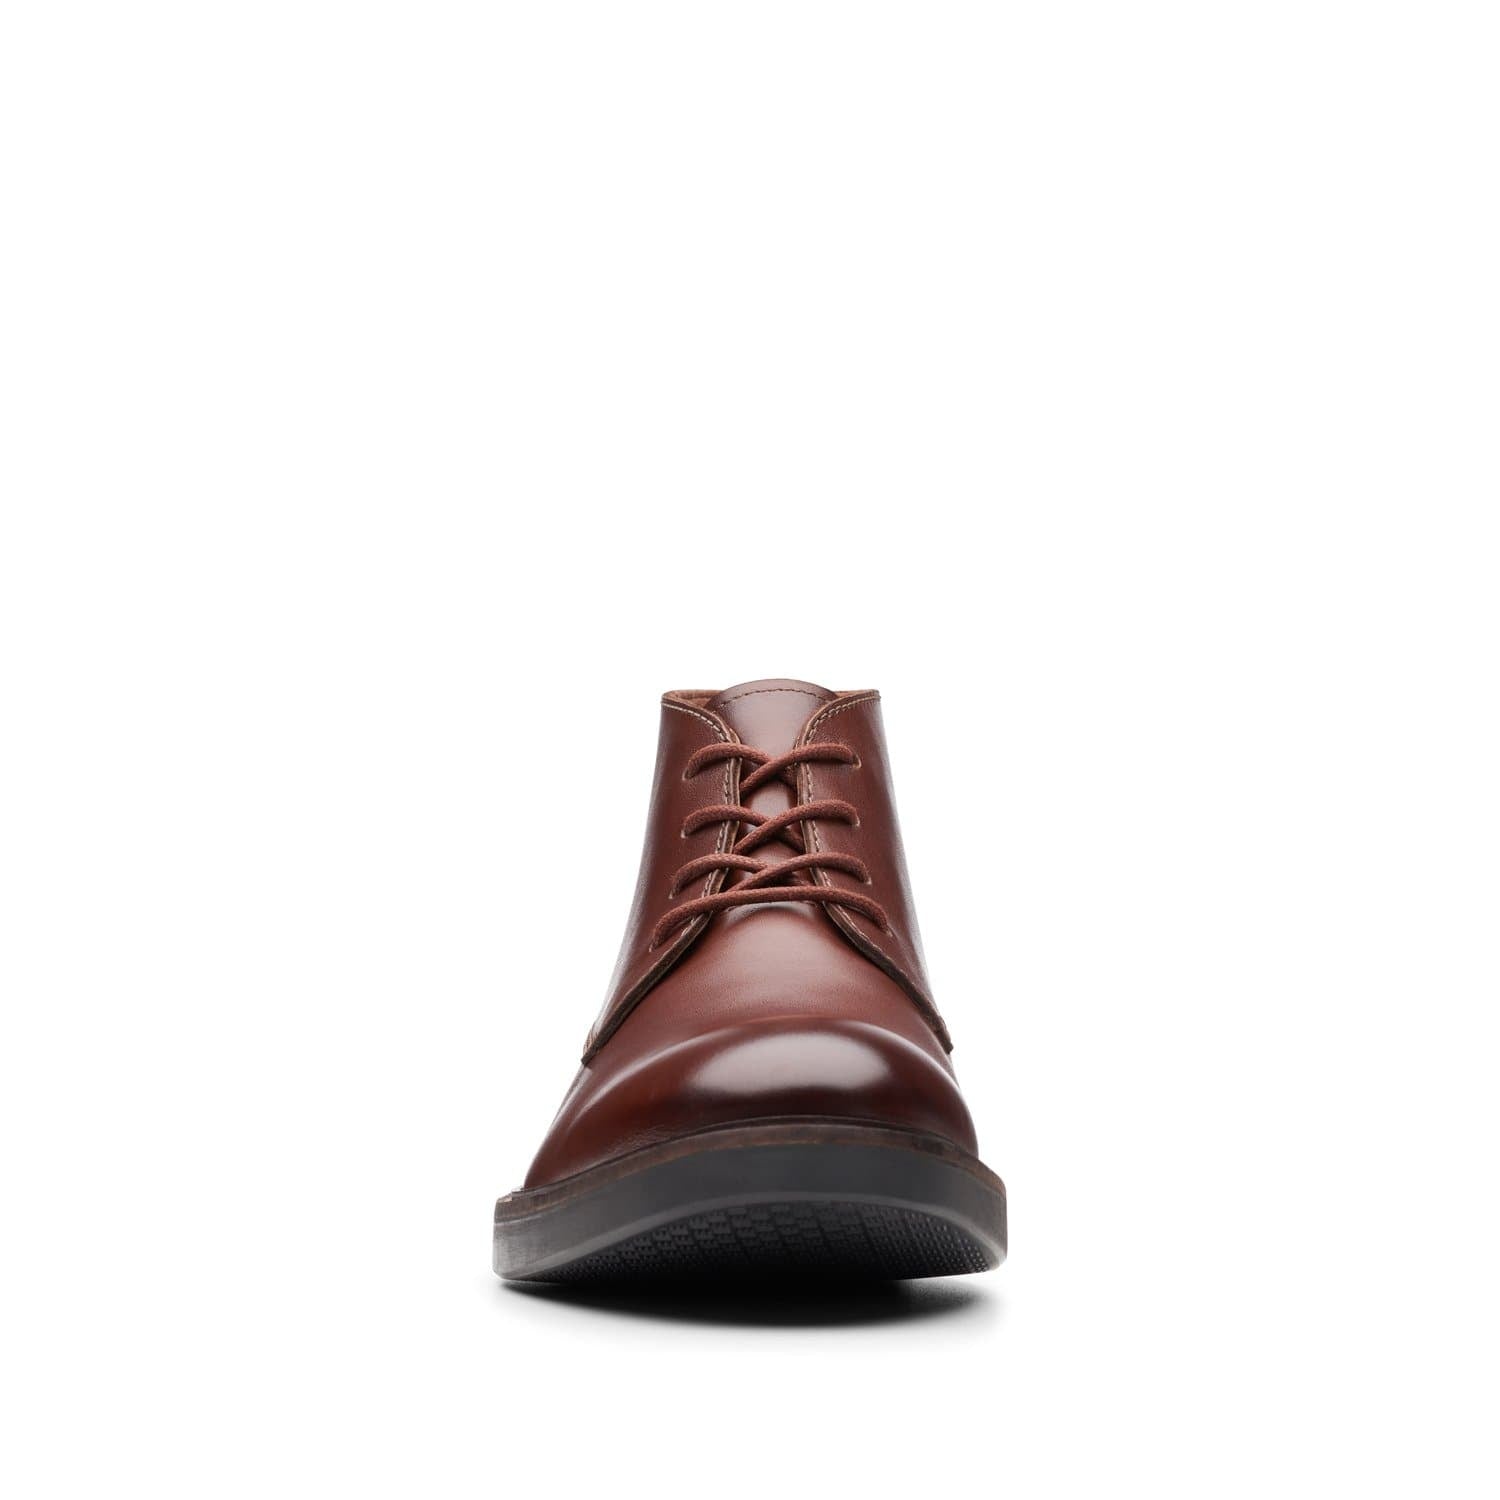 Clarks-Paulson-Mid-Men's-Boots-Mahogany-Leather-26144781